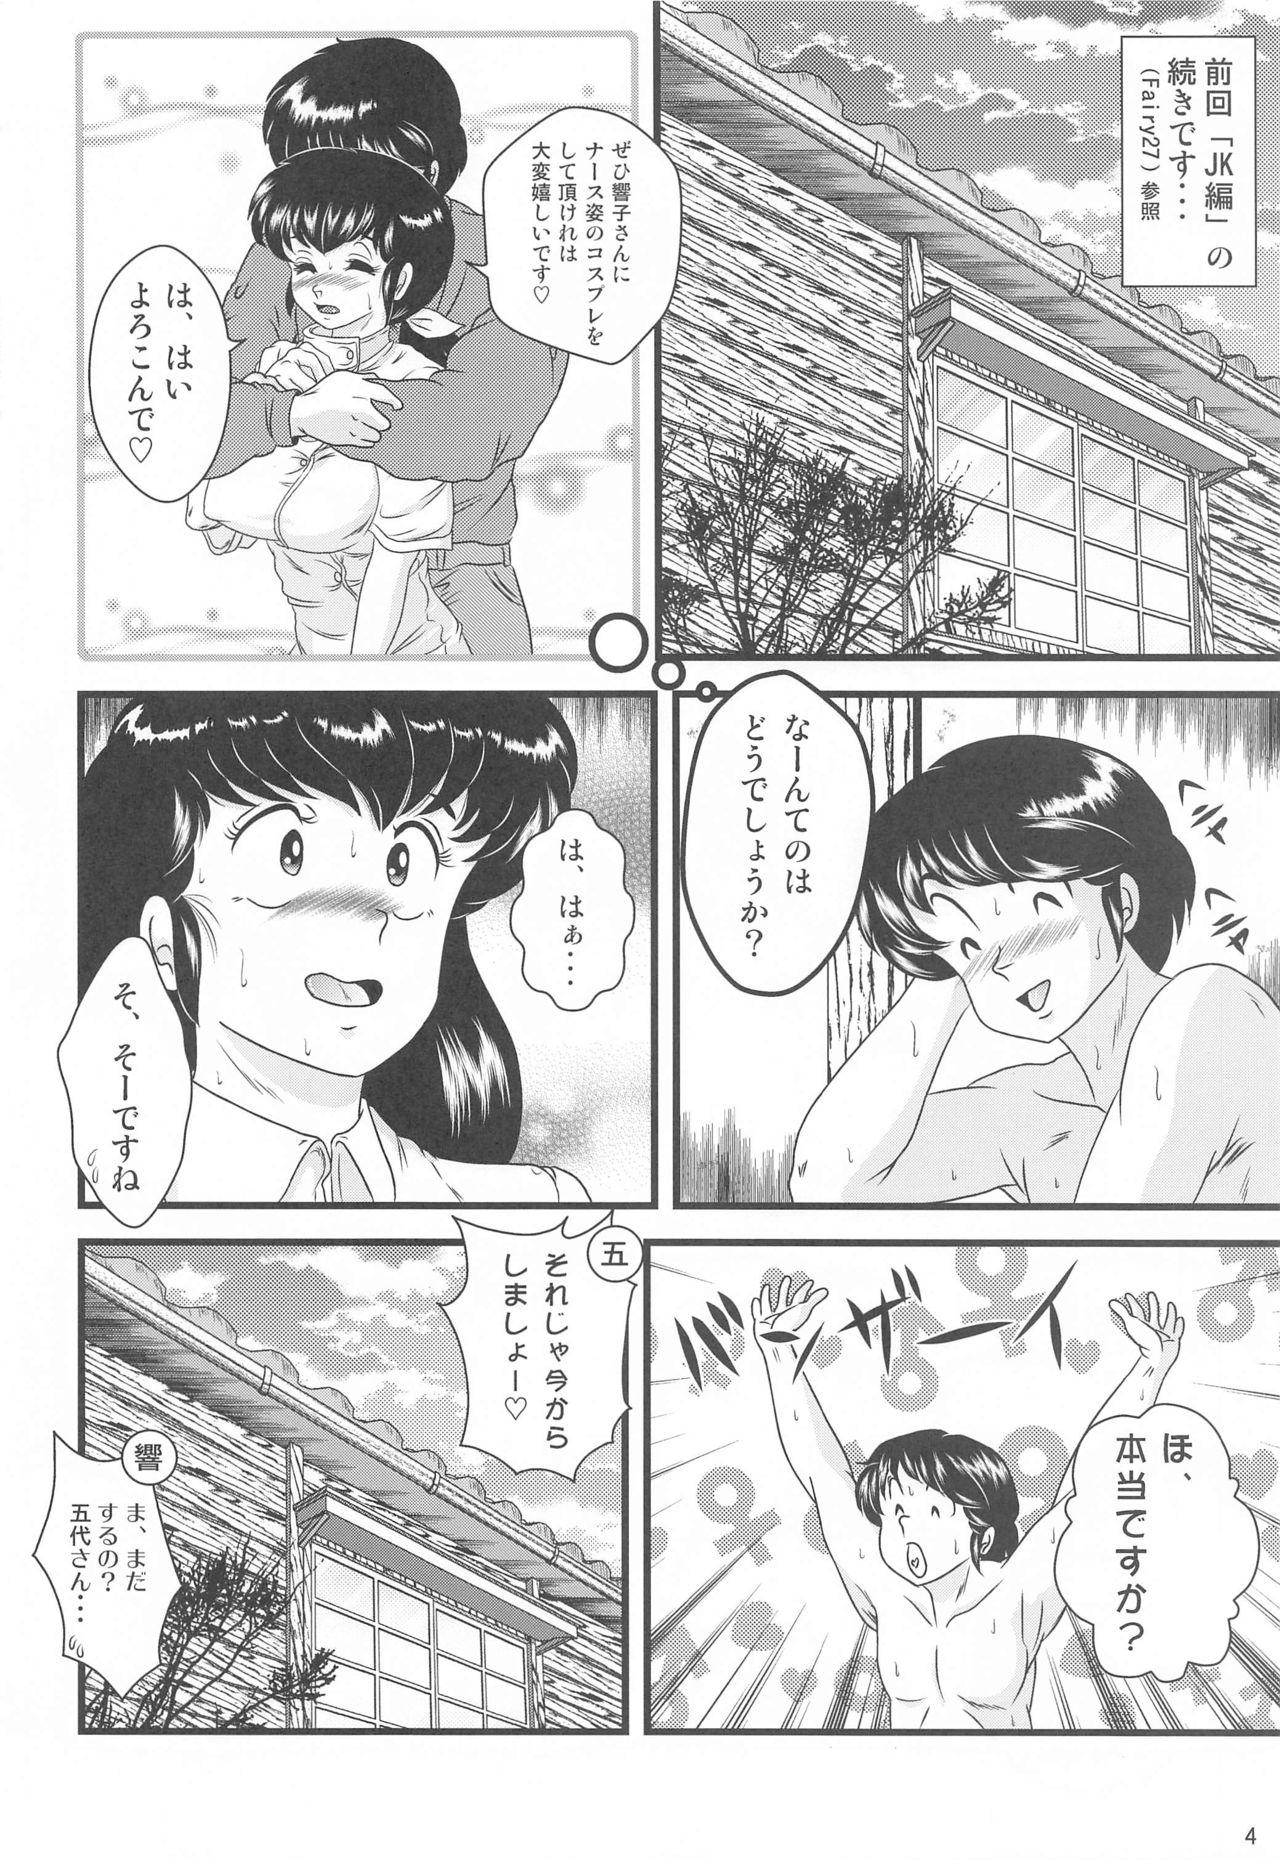 Rope Fairy 28 - Maison ikkoku Teens - Page 3